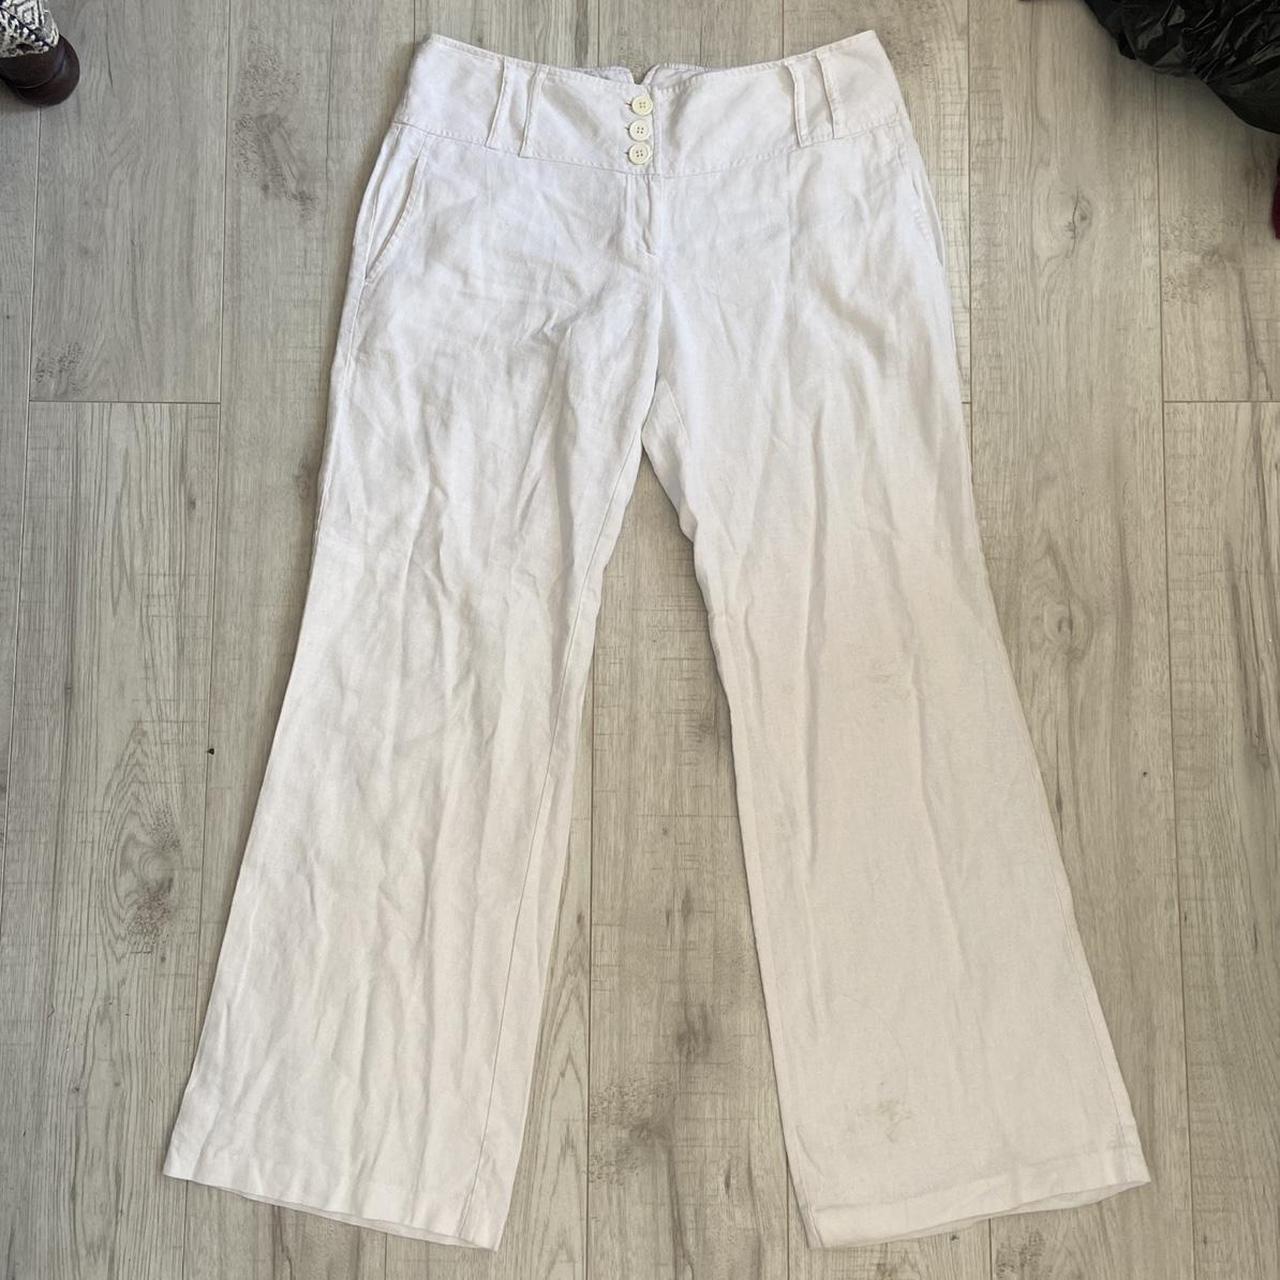 vintage low rise white linen pants 3 button... - Depop